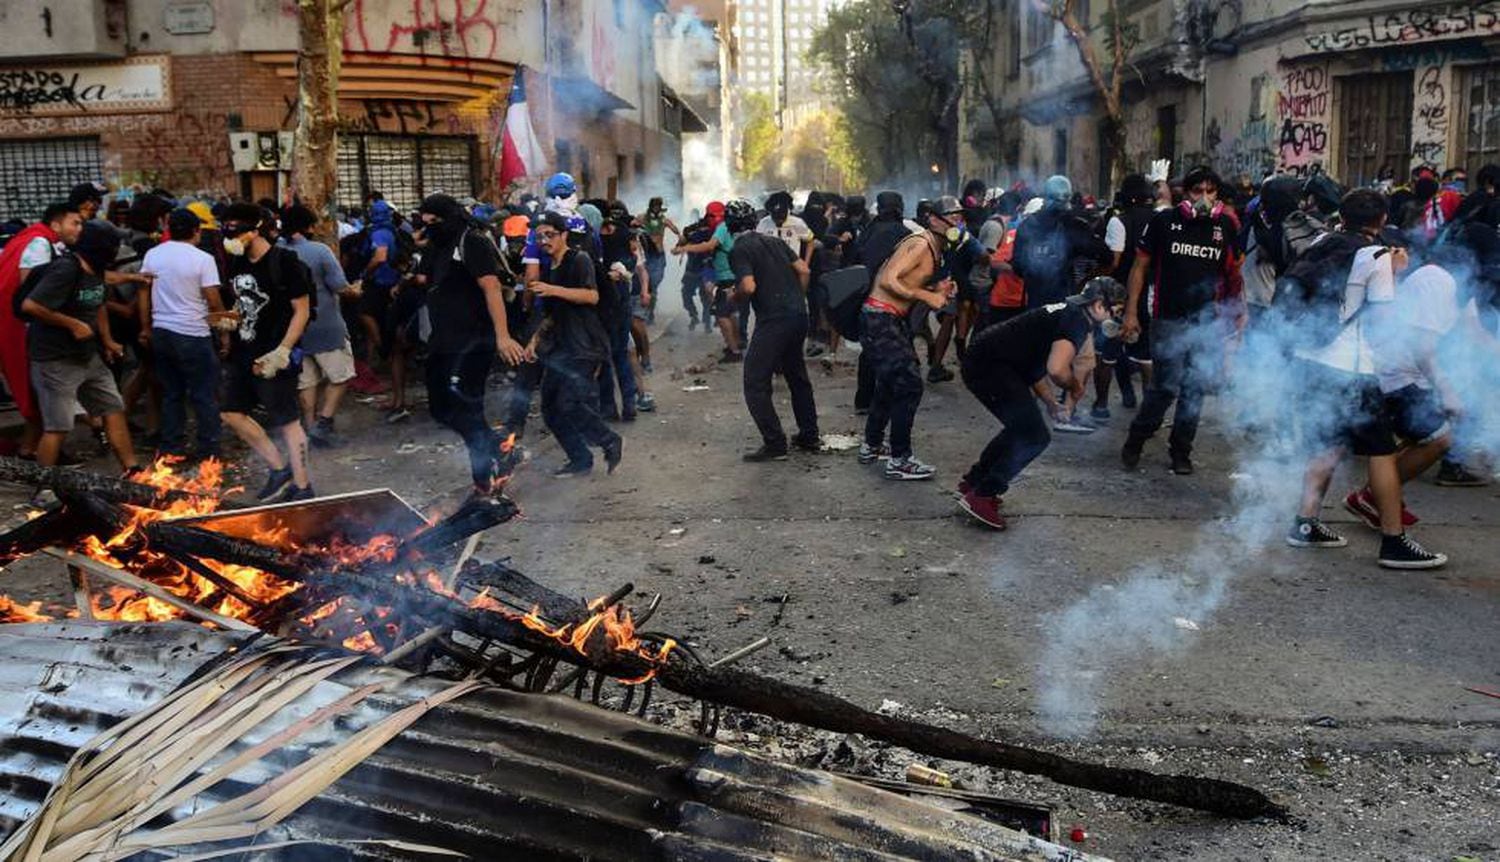 Manifestantes erguem uma barricada em Santiago, durante um protesto de rua em 31 de outubro, uma sexta-feira.